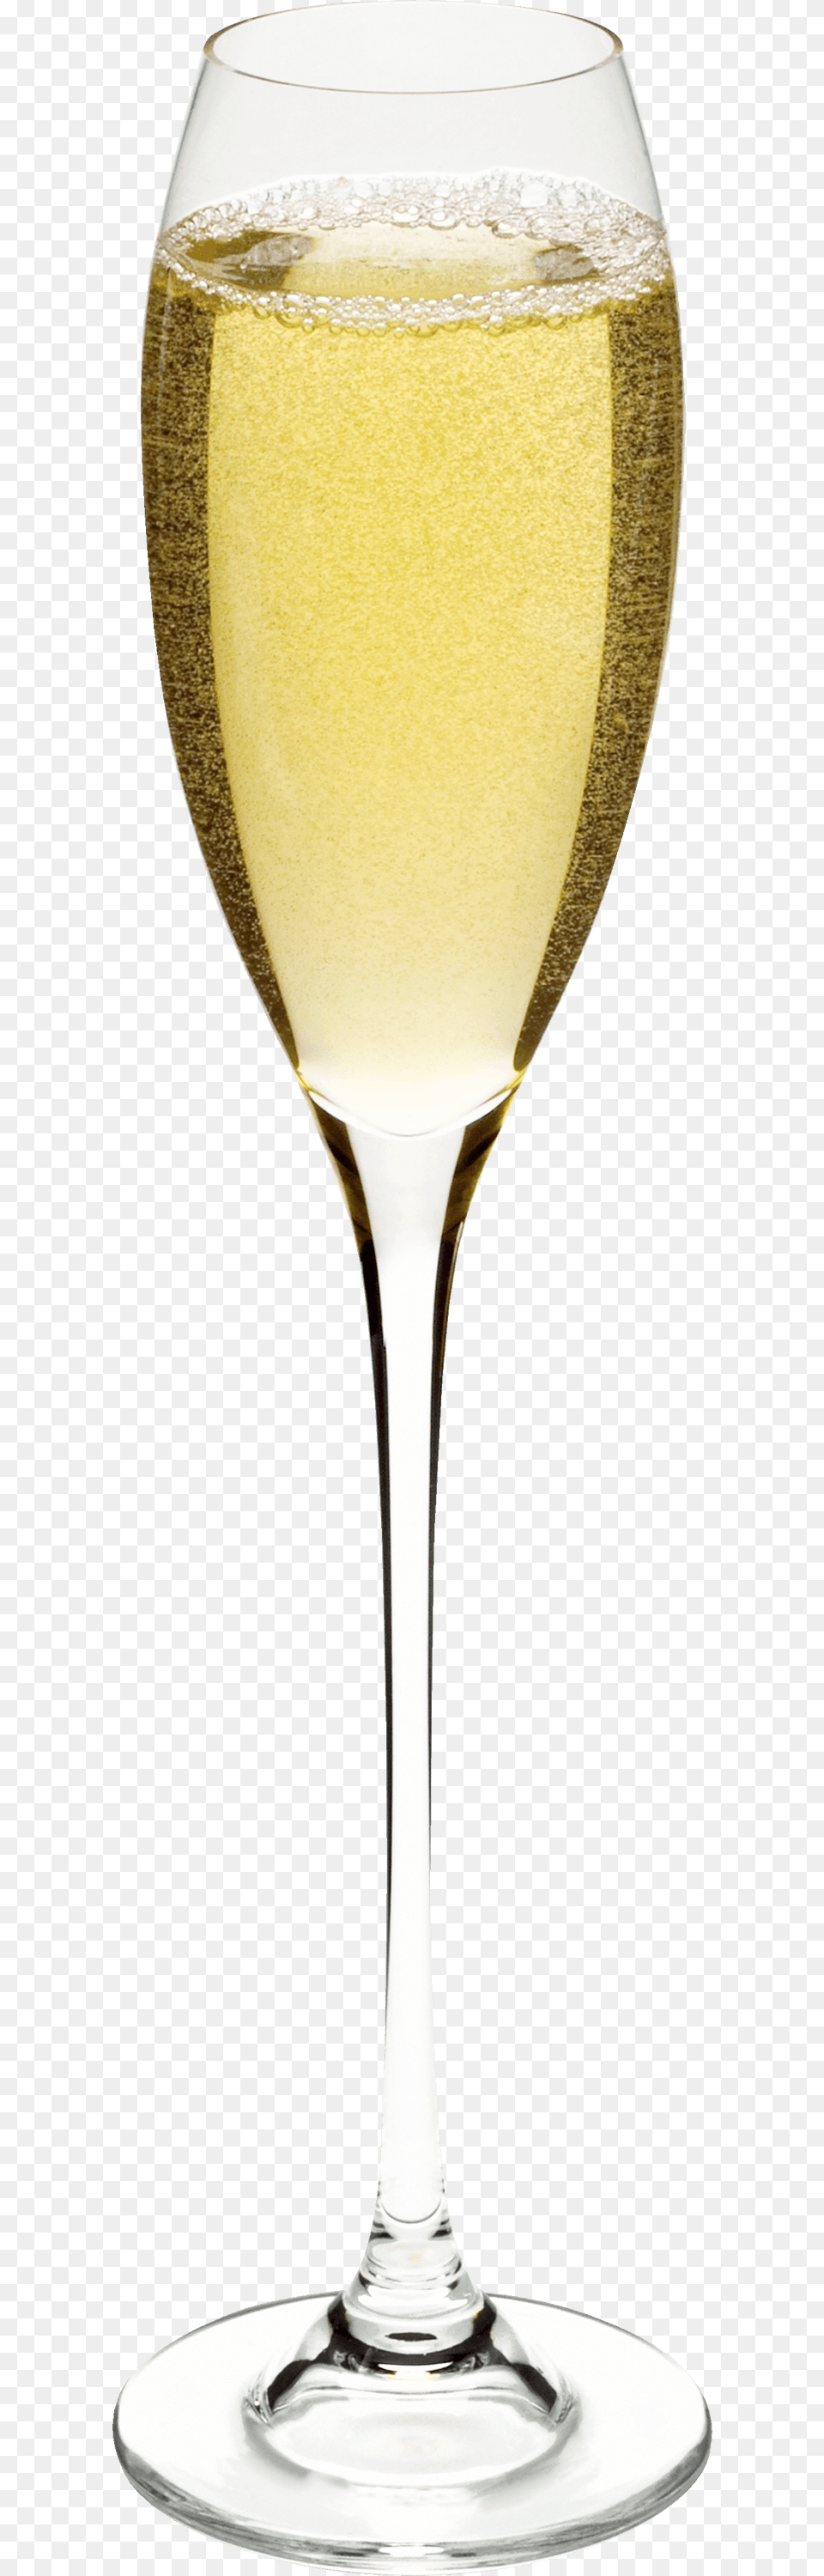 Champagne Glass Bokal Shampanskogo, Alcohol, Beverage, Liquor, Wine Free Png Download